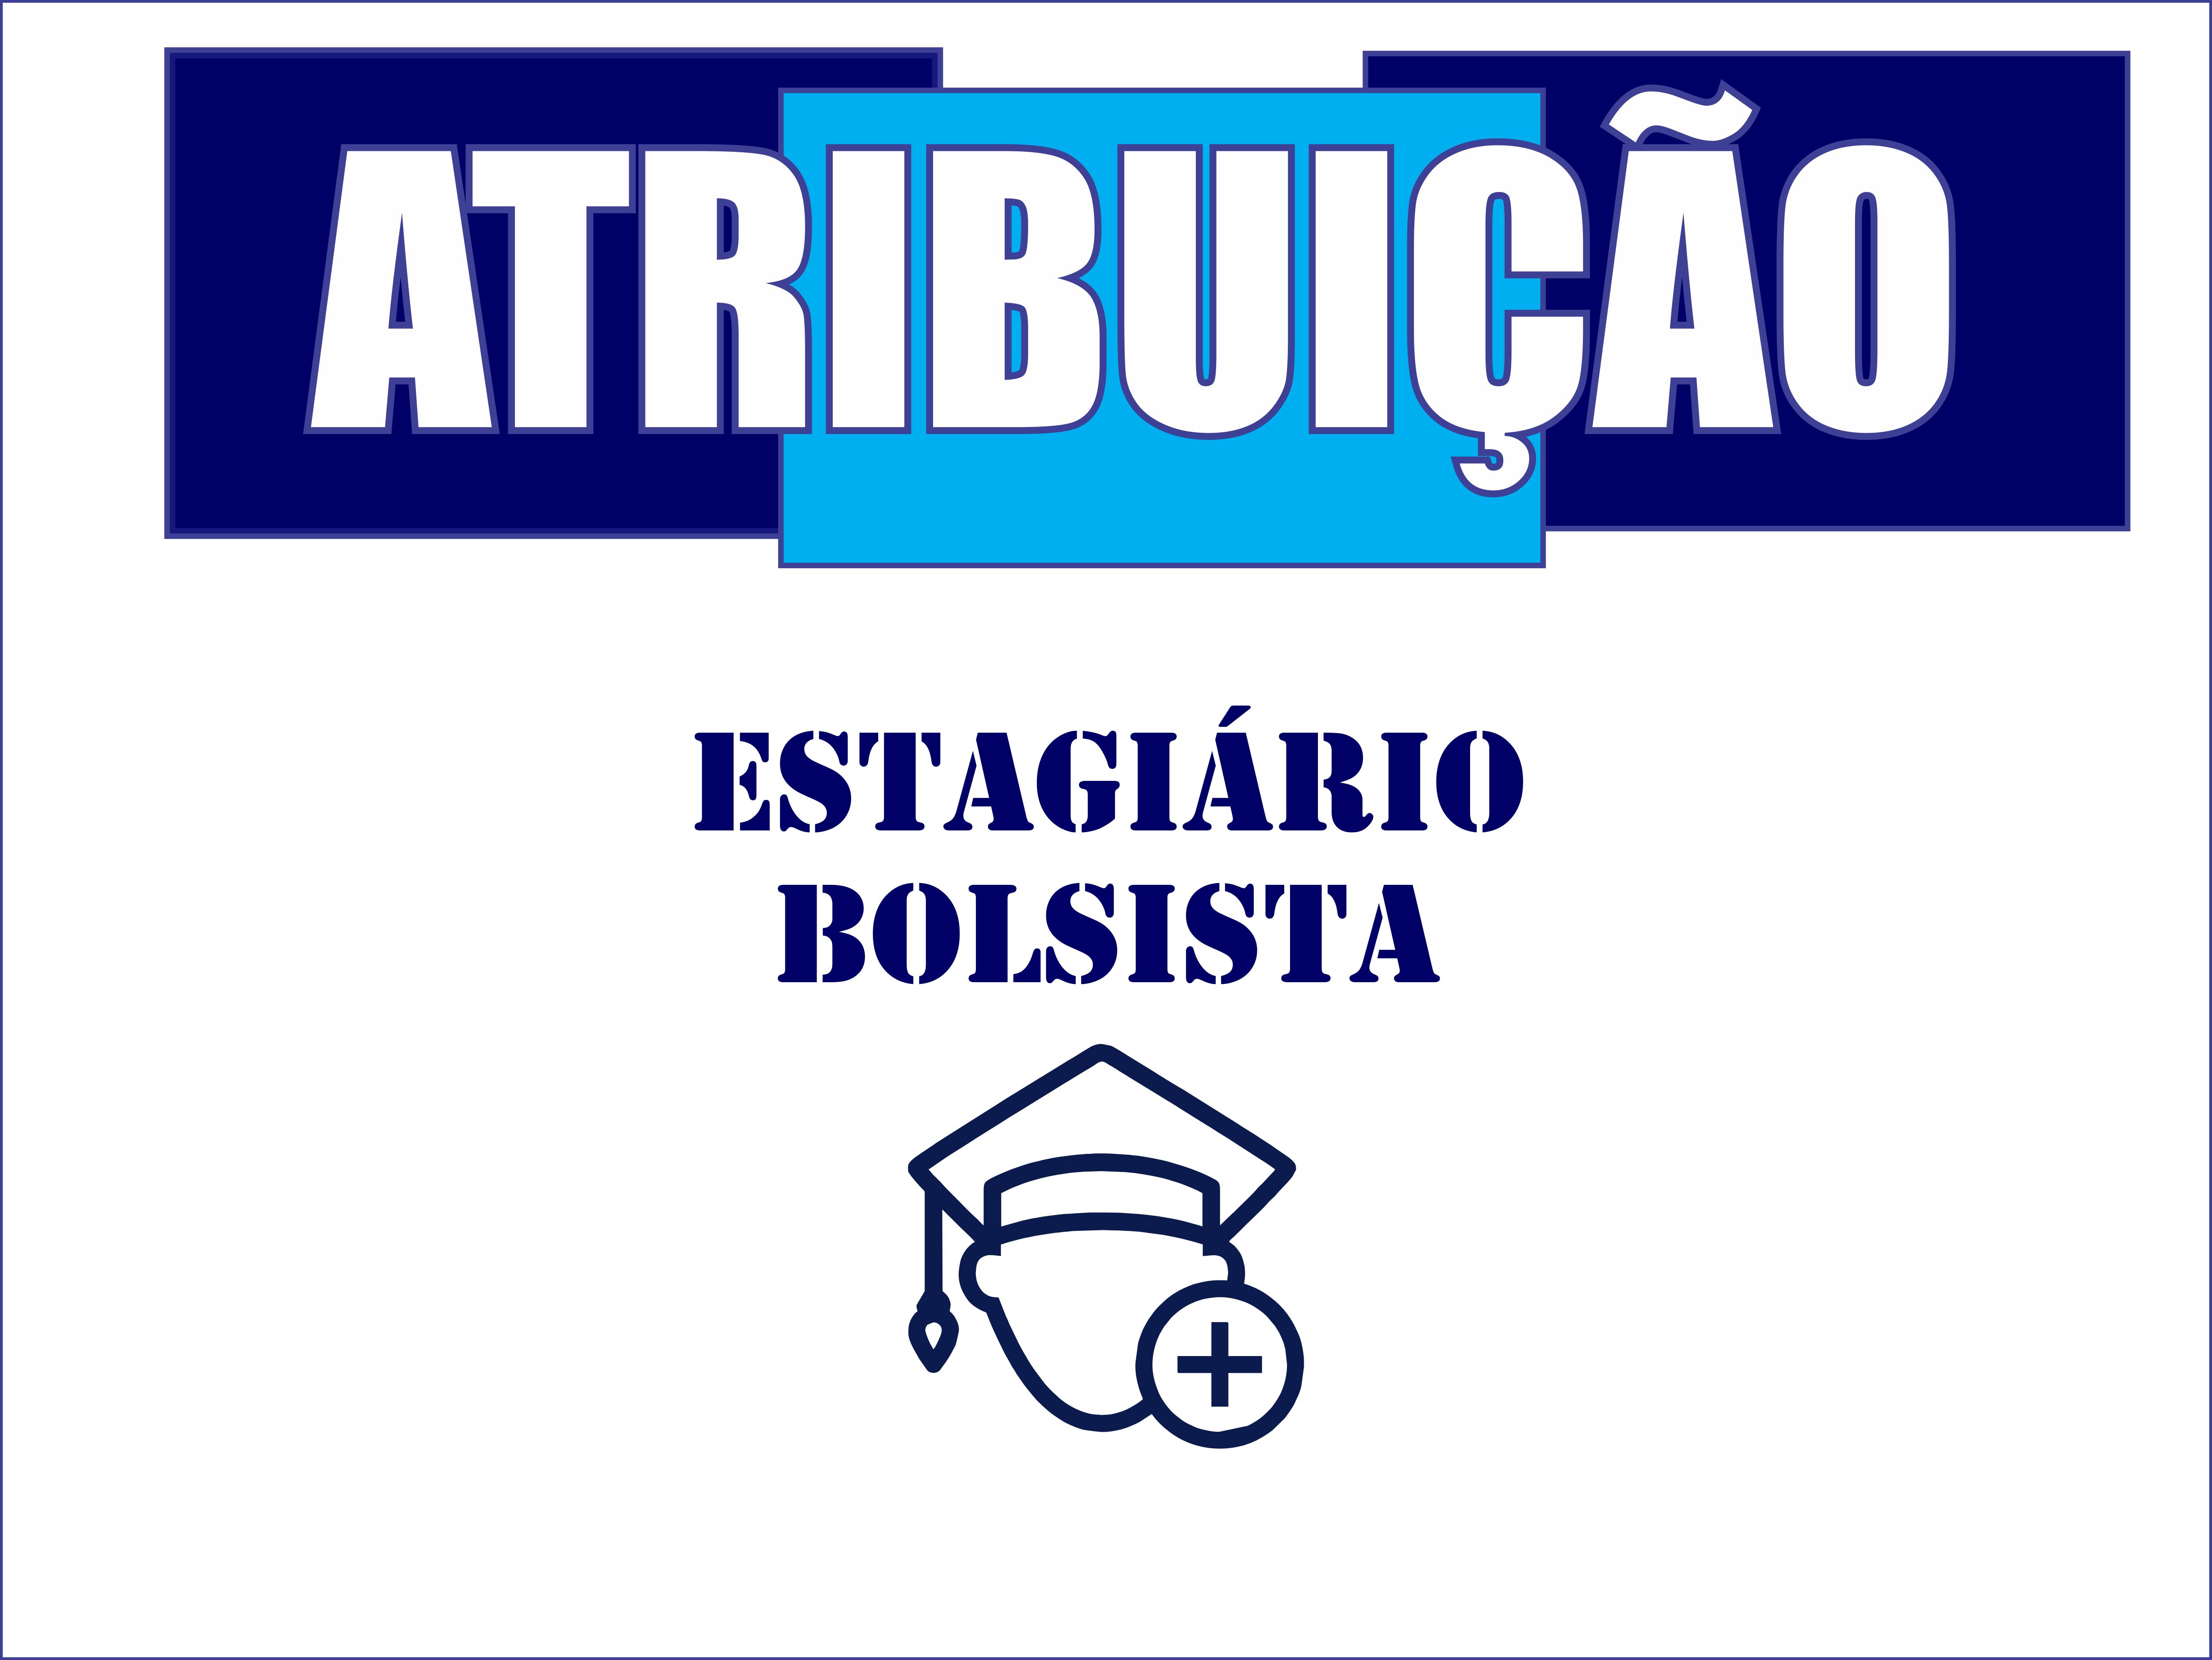 SESSO DE ATRIBUIO BOLSISTA ESTAGIRIO